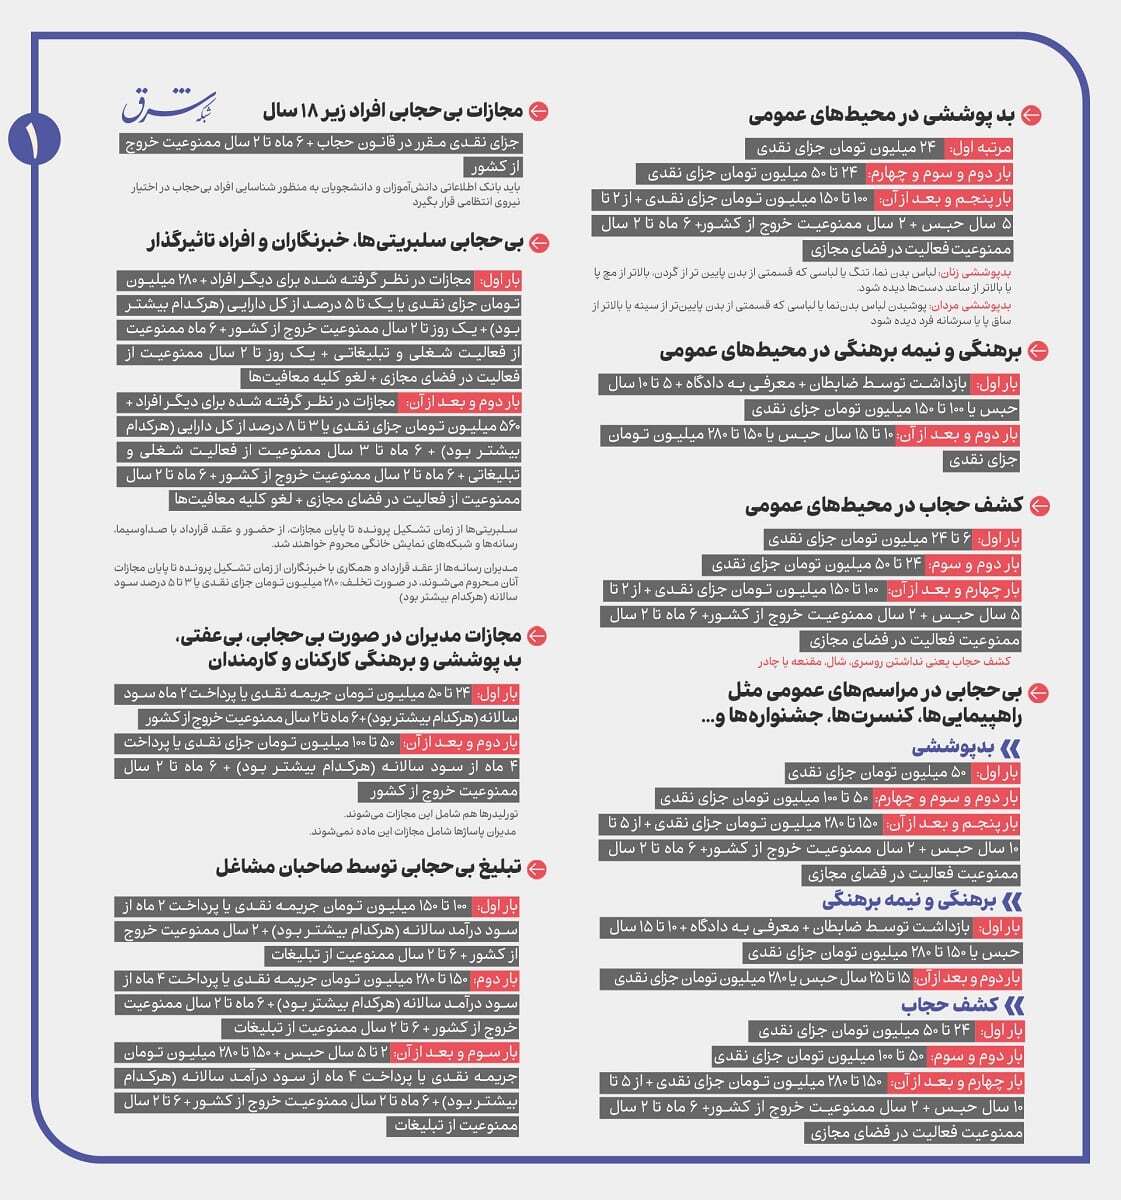 هفتاد خوان حجاب : تصنیف جرایم و مجازات های بی سابقه در قانون نگاری ایران